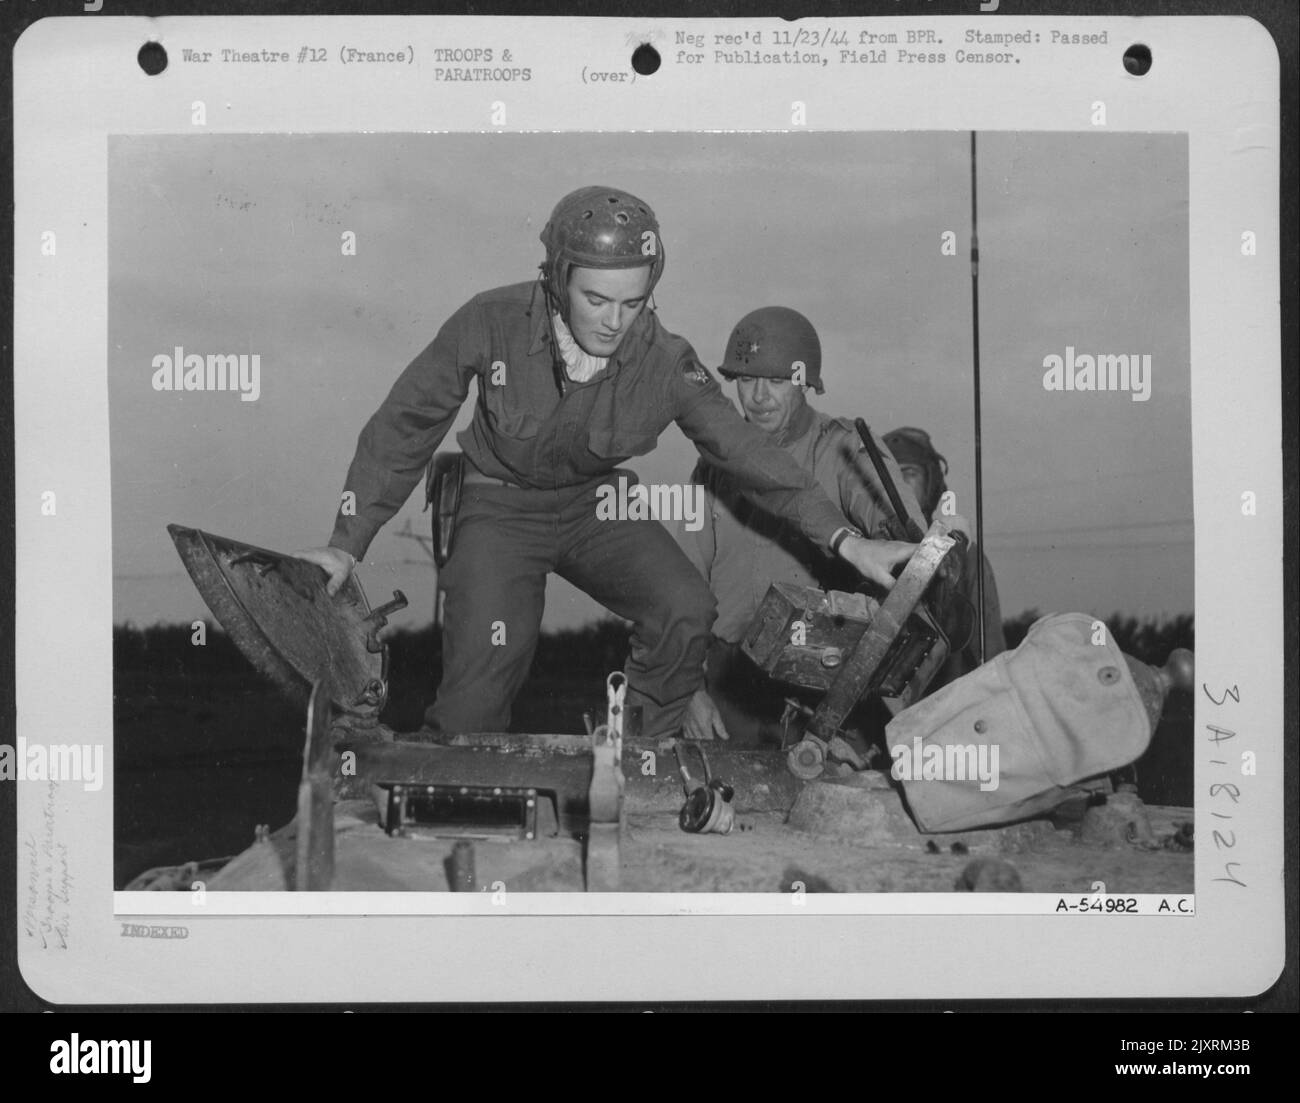 Francia-nella foto di cui sopra, il Lt. Charles R. Earls entra in un carro armato che attualmente farà una sortie nel territorio nazista. Dietro il pilota Thunderbolt P-47 c'è Briga. Boudinot generale di Beverly Hills, California, comandante di un carro armato di Yank Foto Stock